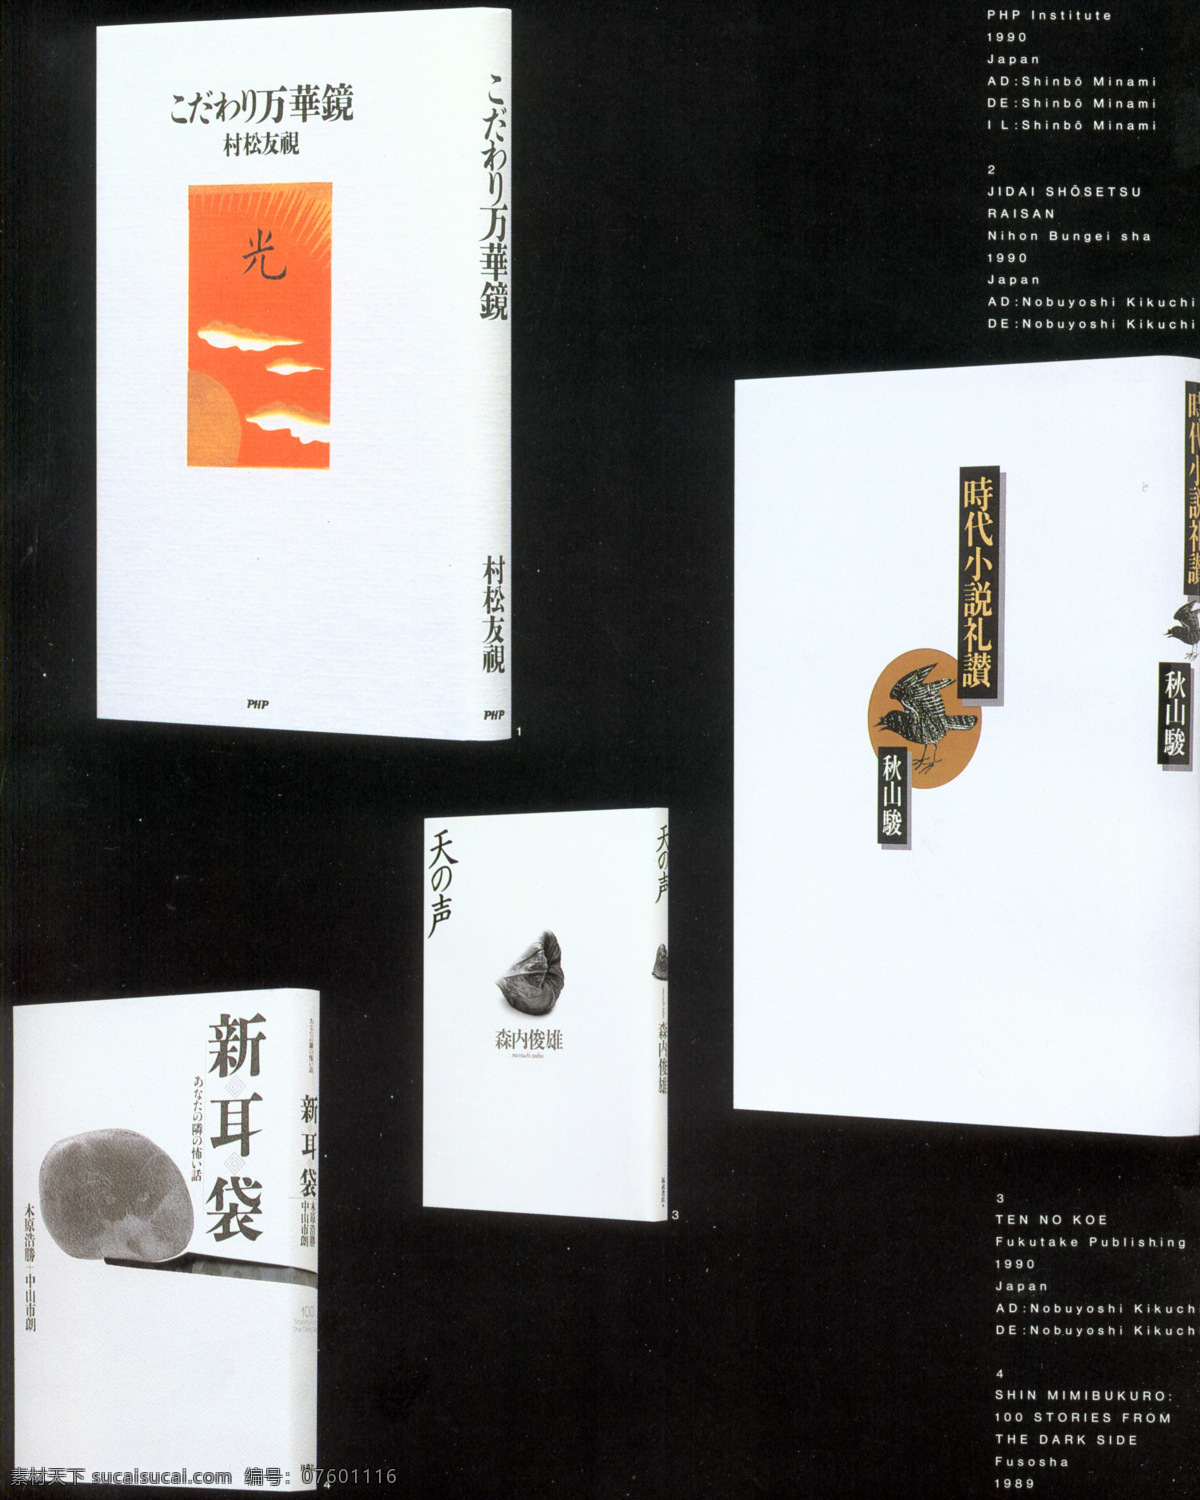 封面设计 书籍装帧 jpg0200 设计素材 平面设计 黑色